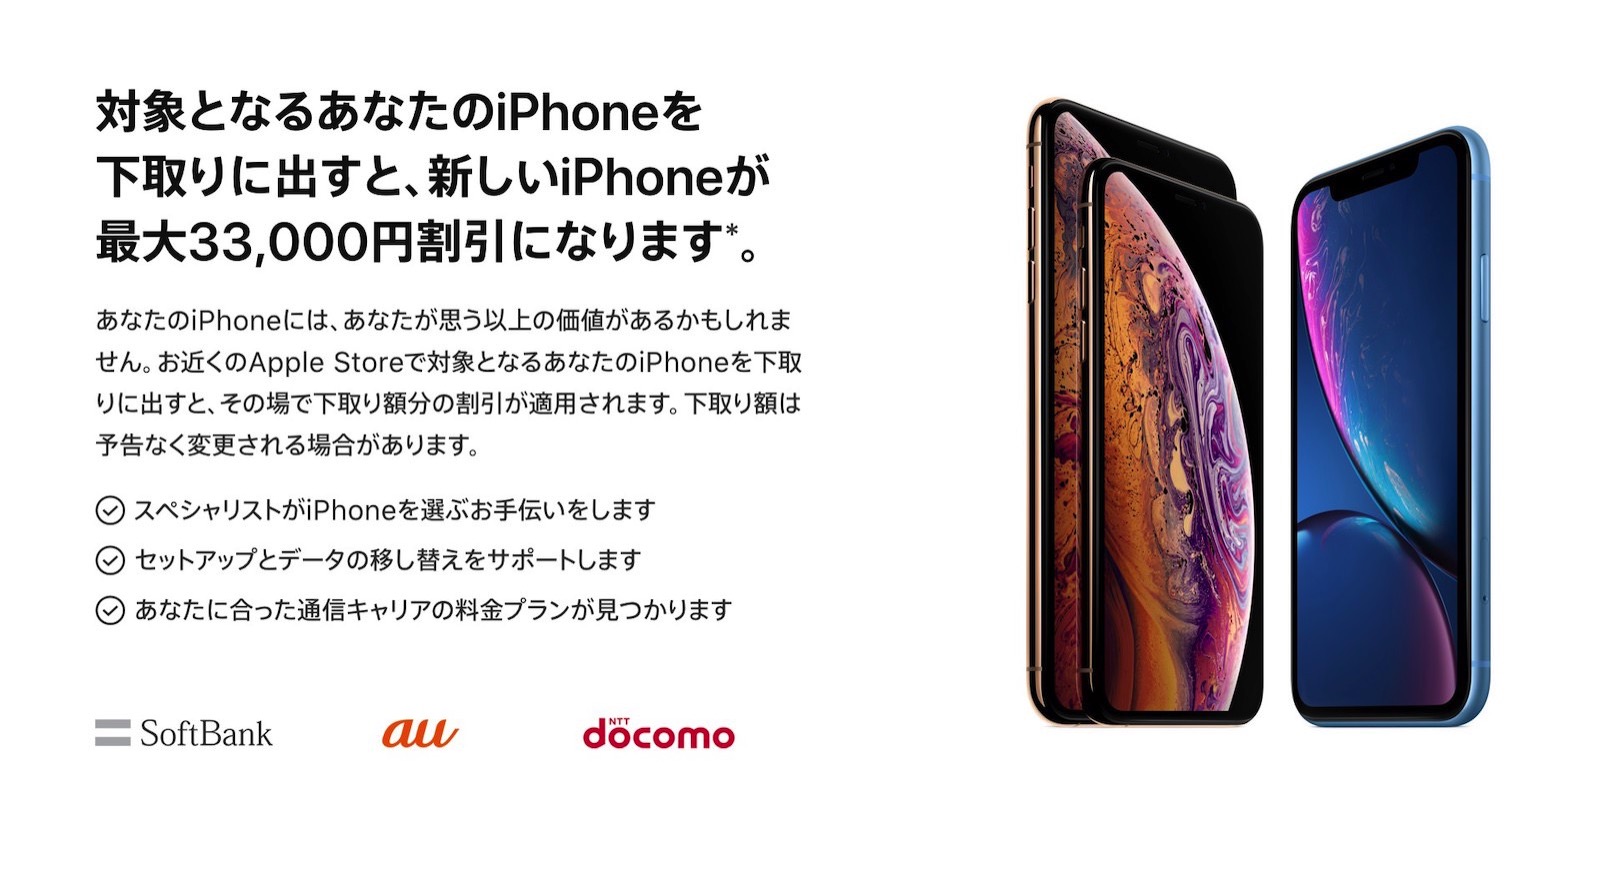 Apple Apple Store店頭でiphone買い替え時における下取り額を増額へ ゴリミー